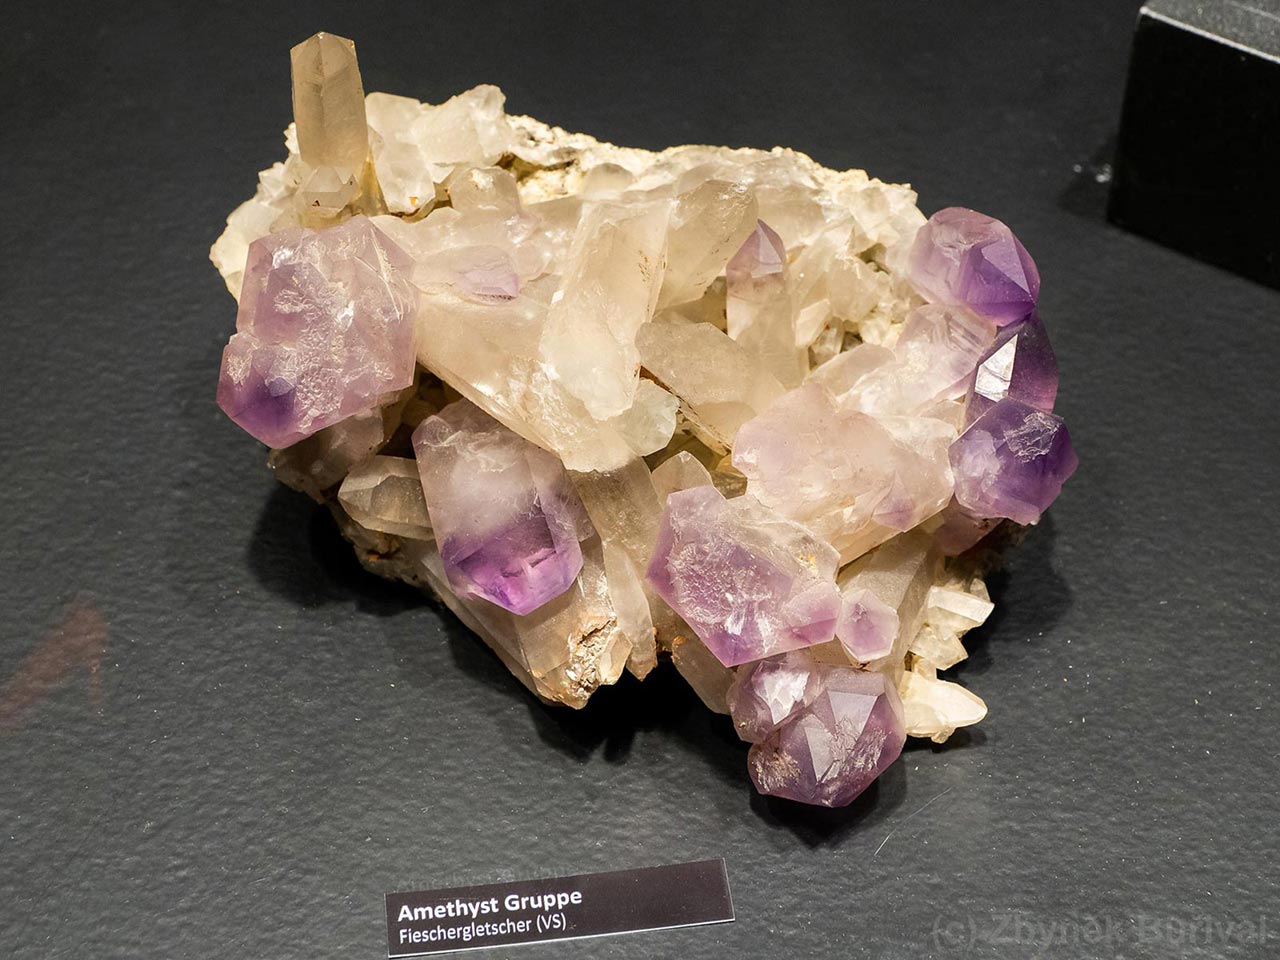 Alpine amethyst crystals from Fieschergletscher, Switzerland